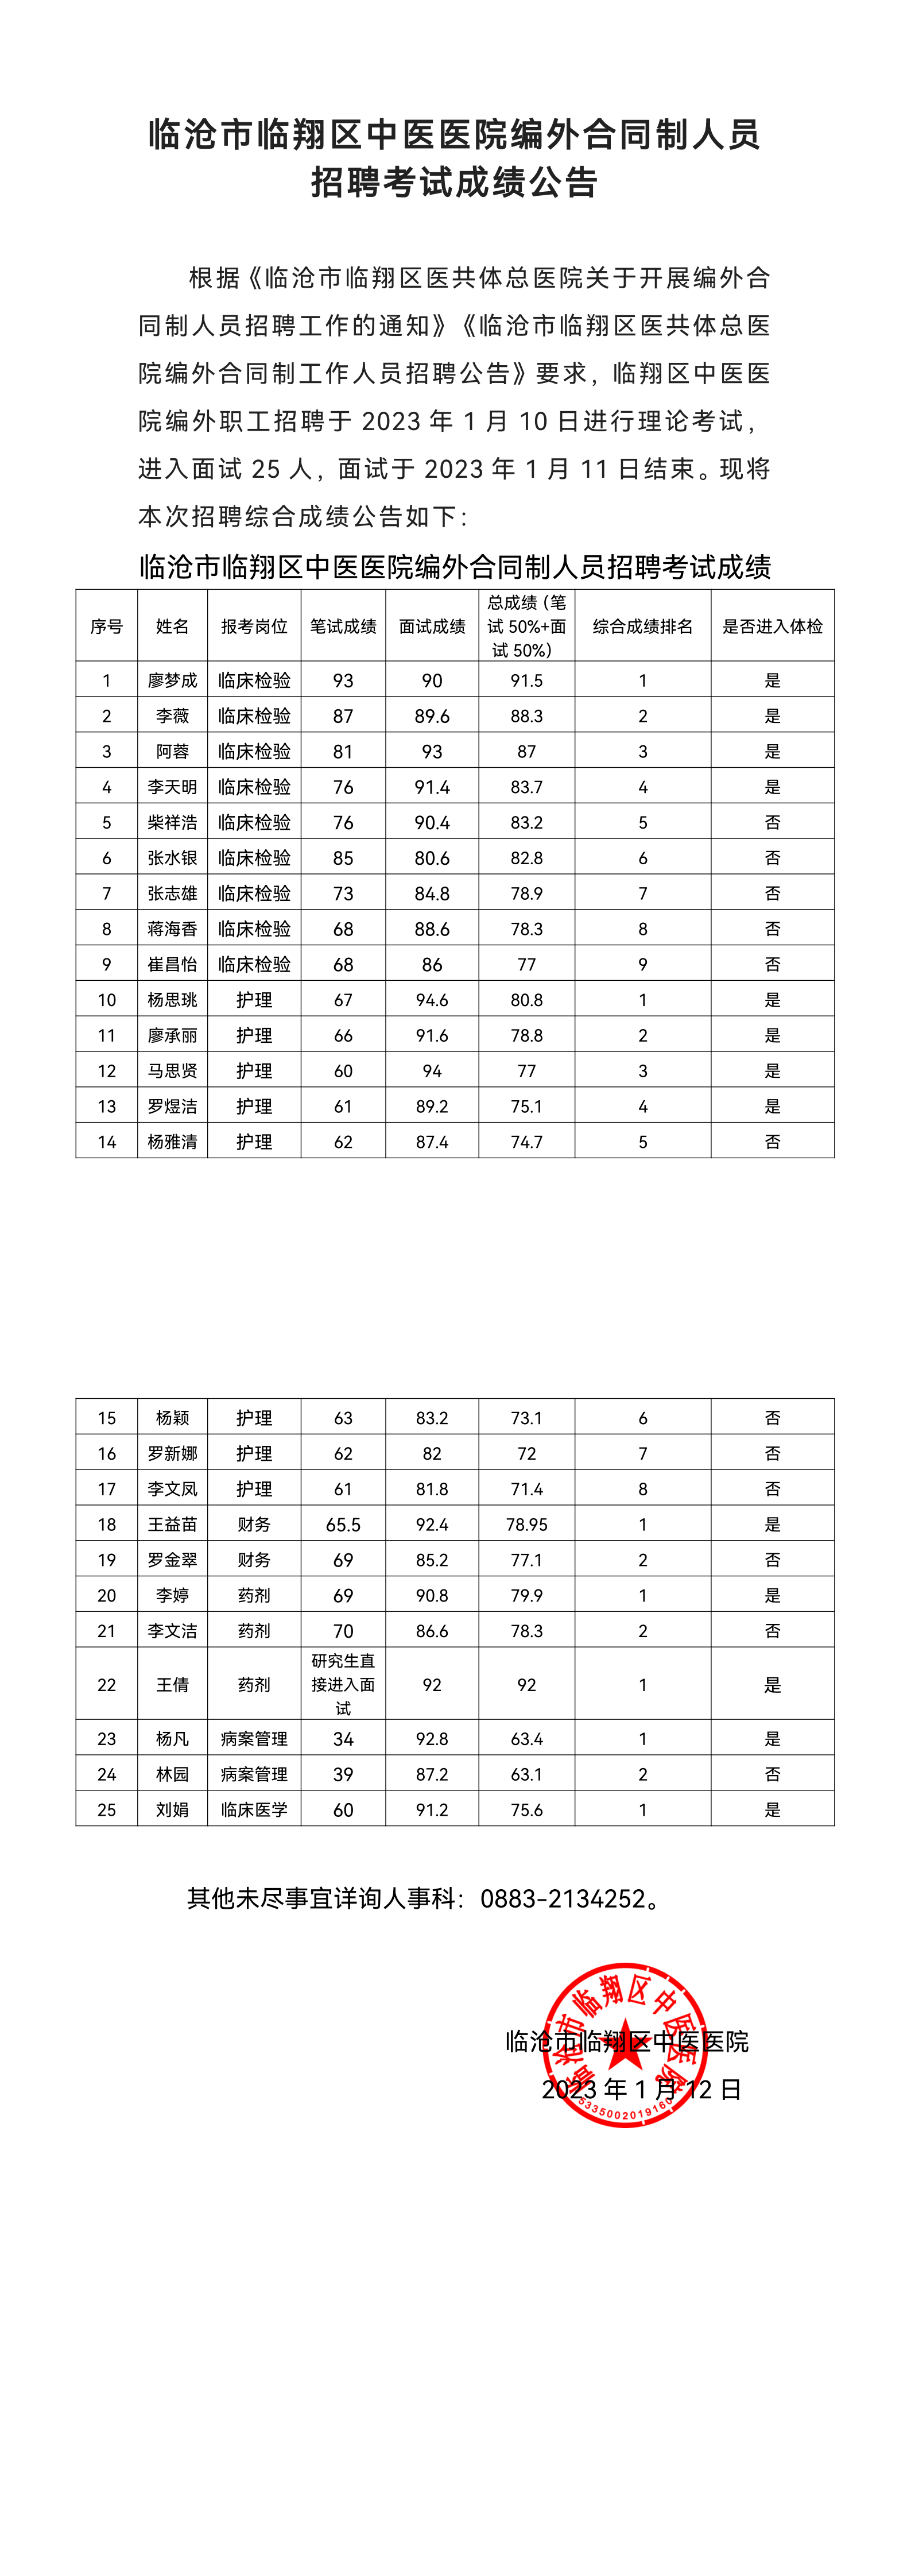 18色禁用黄游戏入口编外合同制人员招聘考试成绩公告(3)_00.png